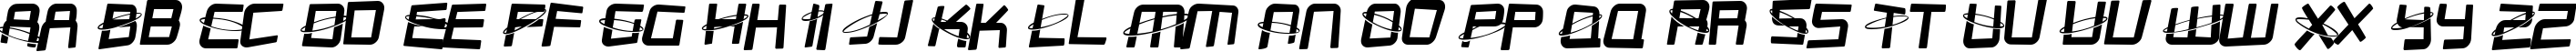 Пример написания английского алфавита шрифтом SF Outer Limits Distorted